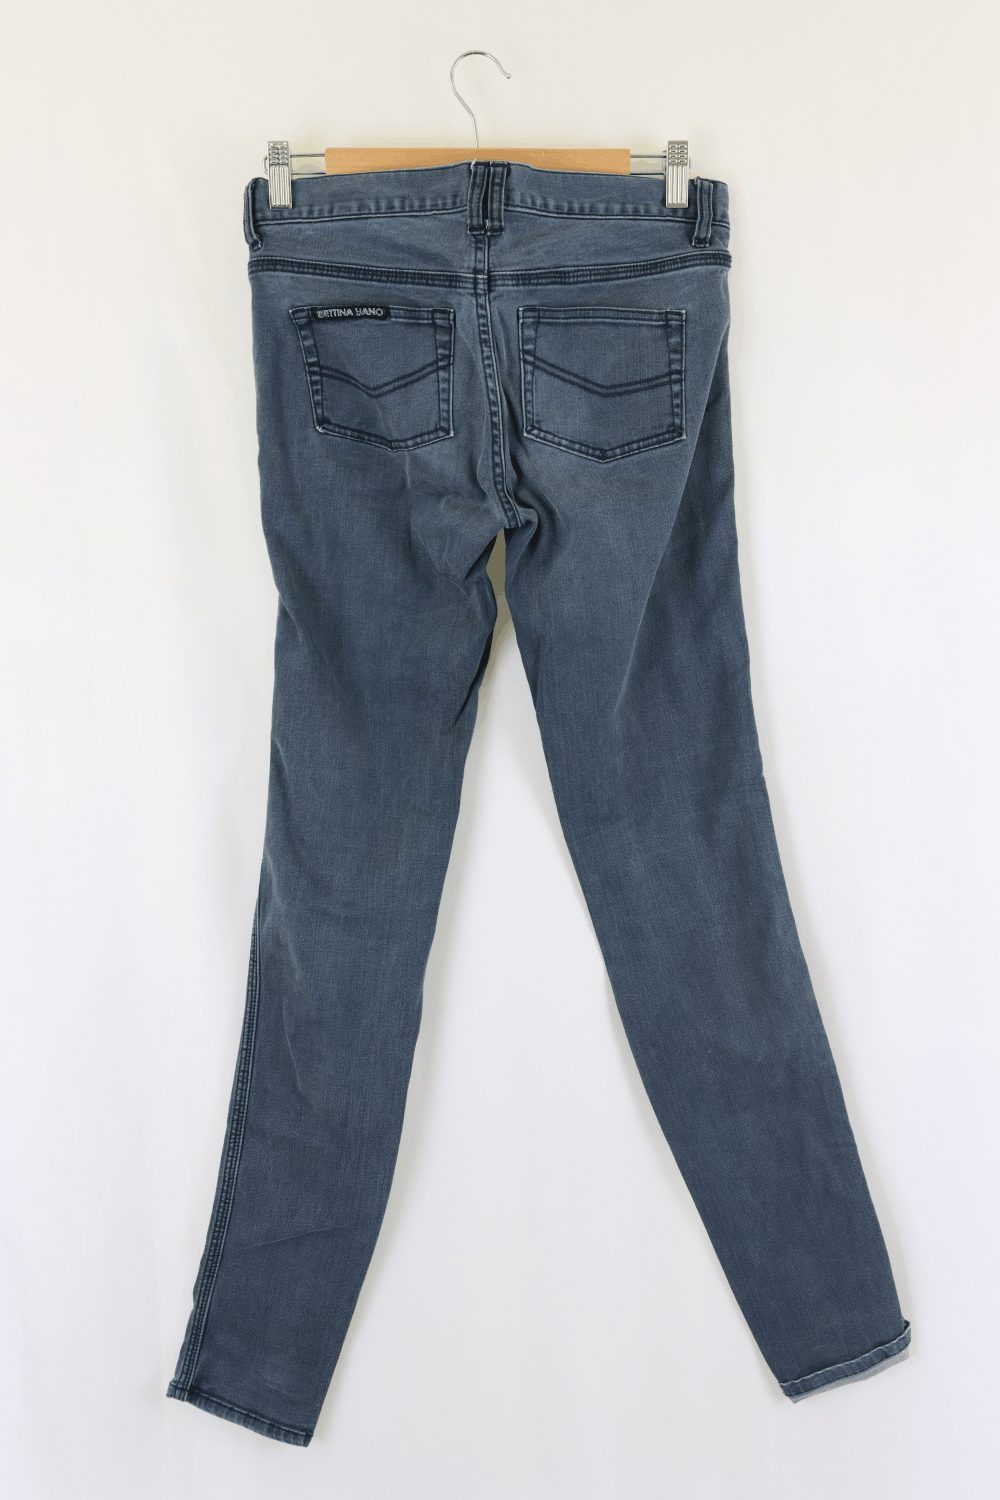 Bettina Liano Blue Jeans 8